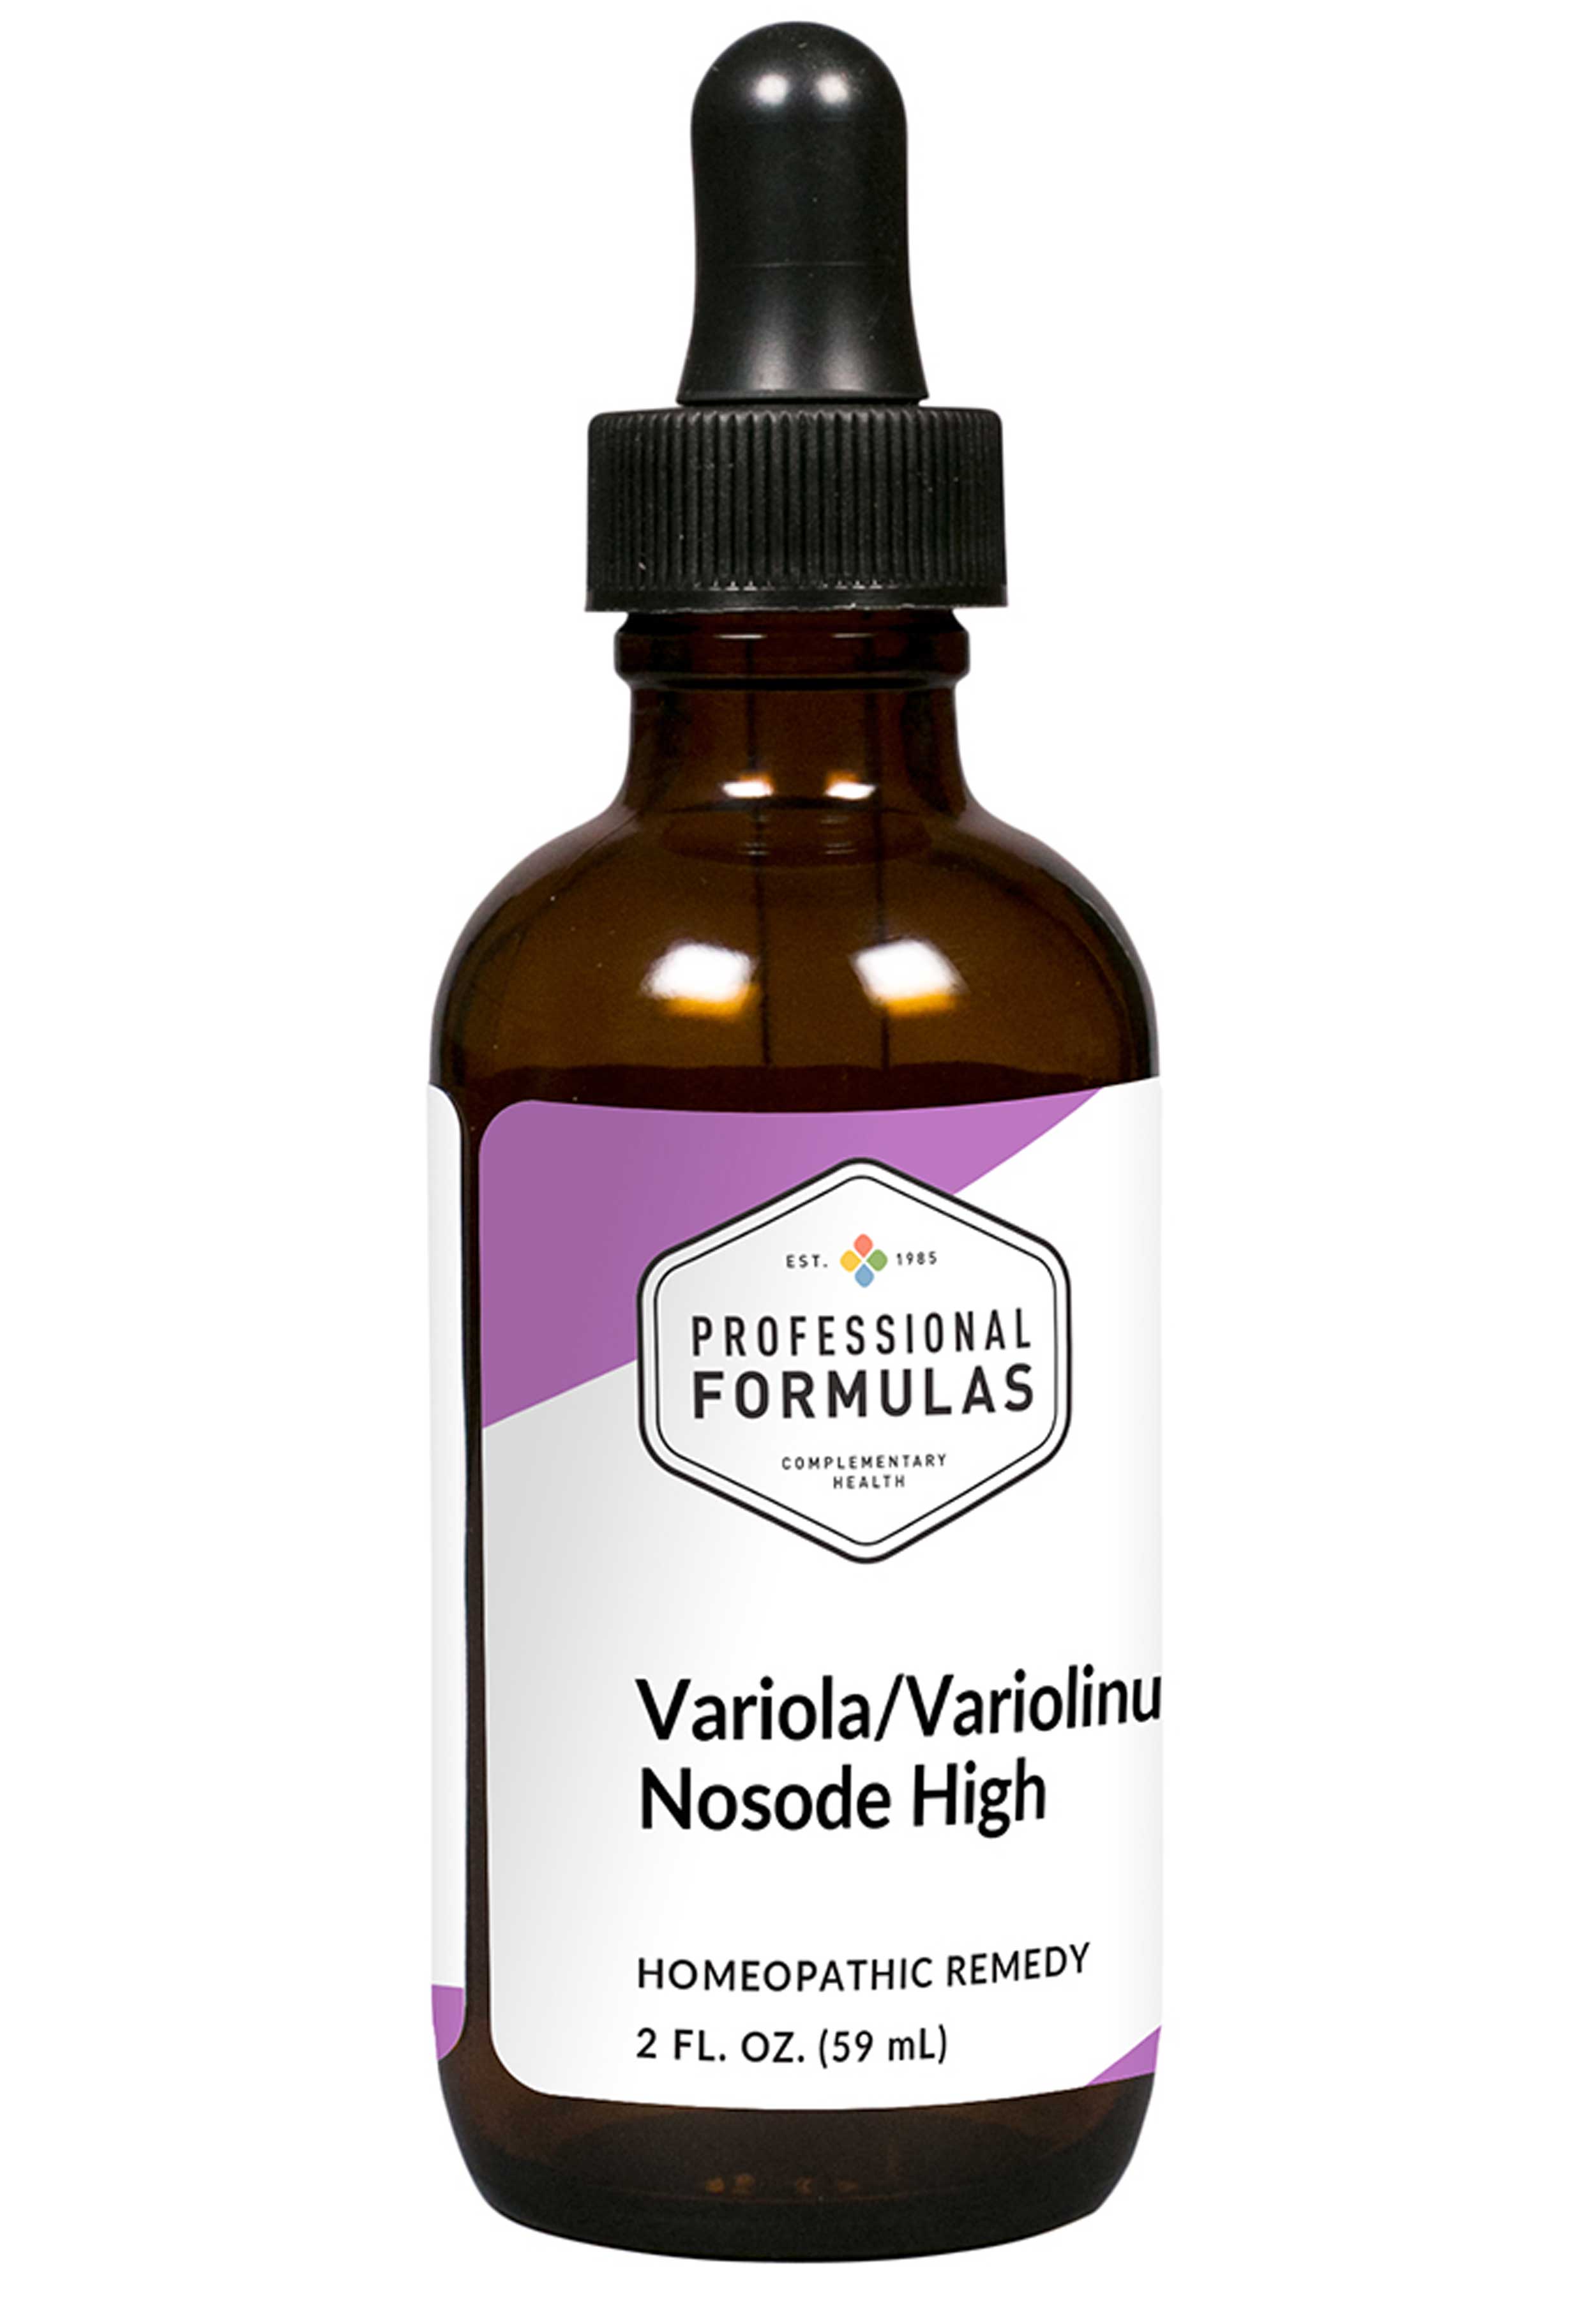 Professional Formulas Variolinum/Smallpox Nosode (High)